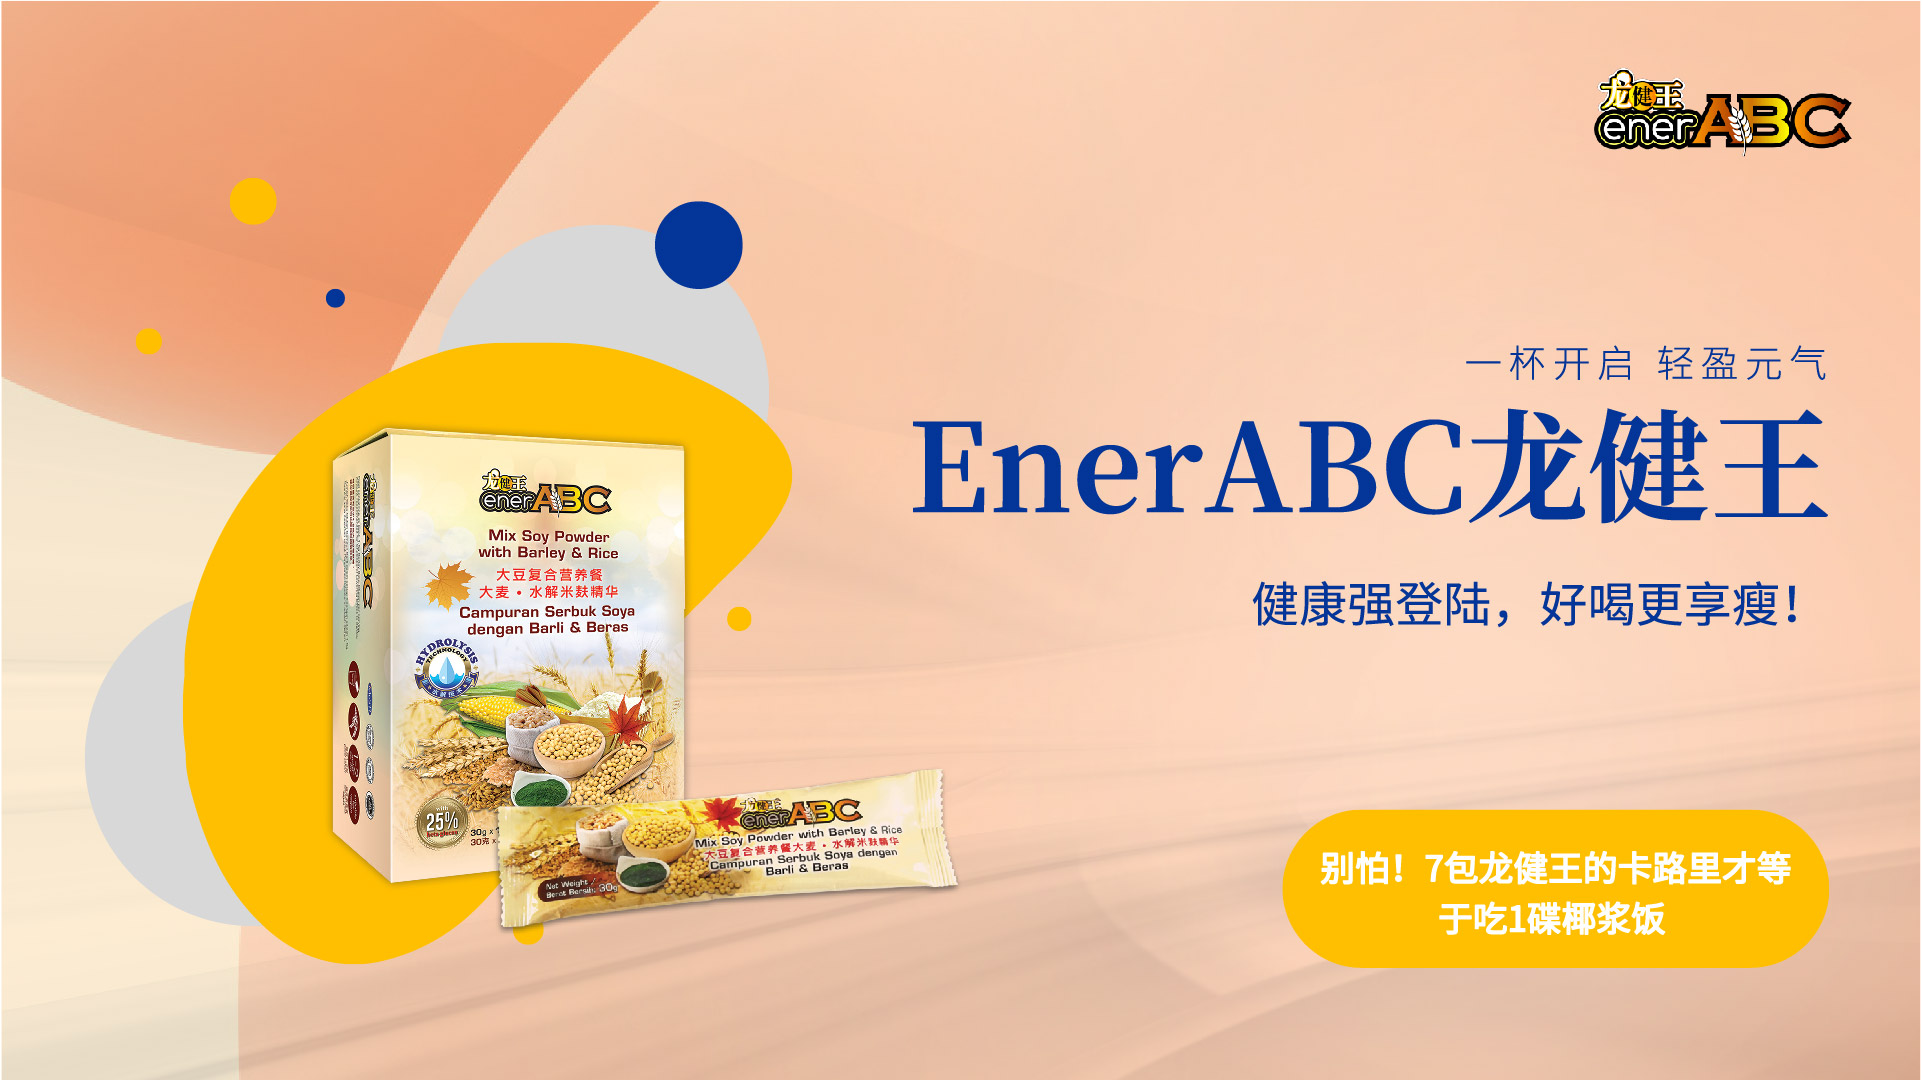 enerabc product details